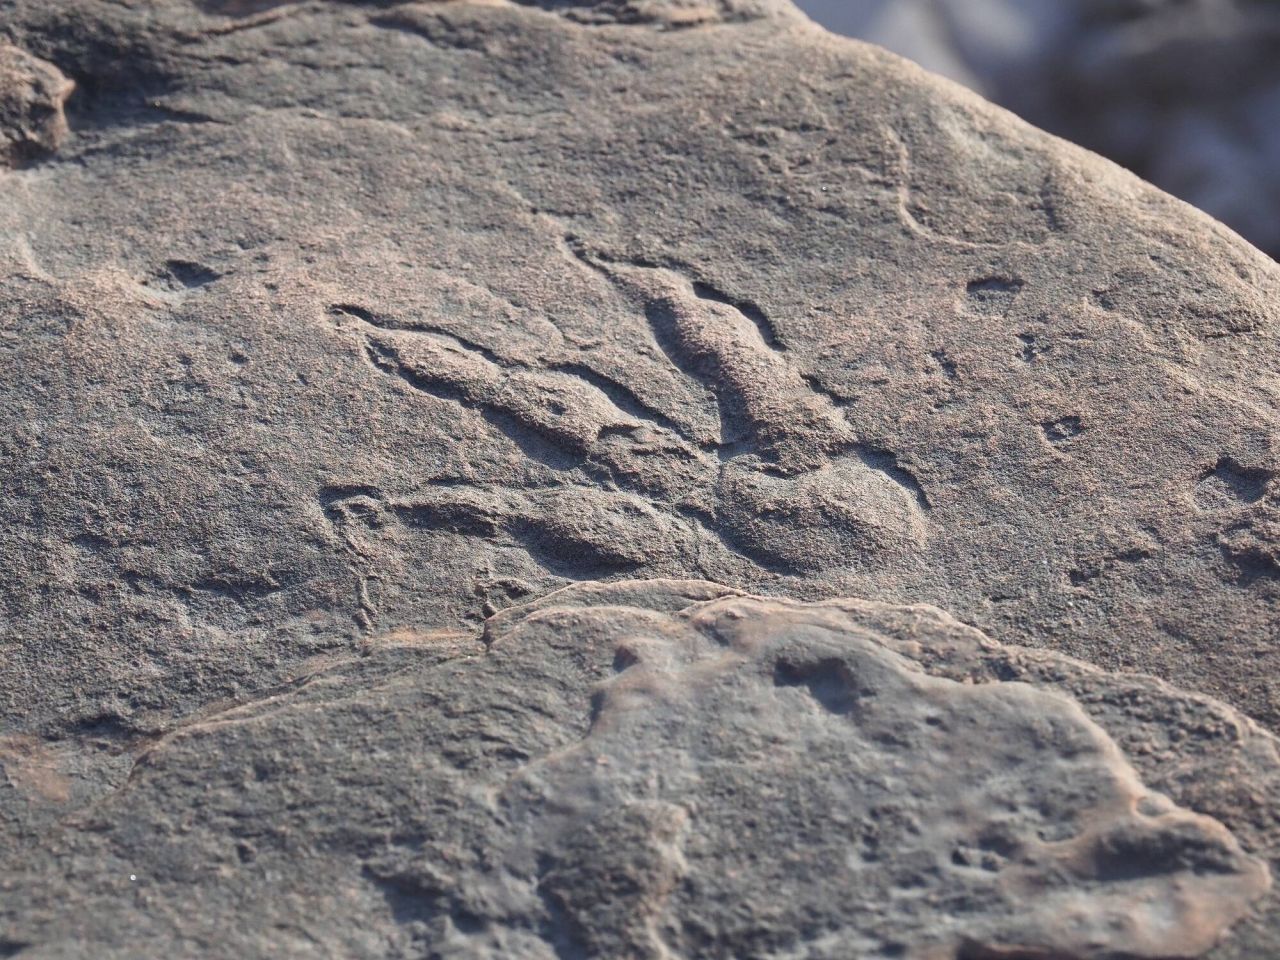 Diesen etwa zehn Zentimeter langen Fußabdruck eines Dinosauriers fand ein vierjähriges Mädchen 2021am Strand in Wales. Besucher:innen können ihn nun im National Museum Cardiff bestaunen.